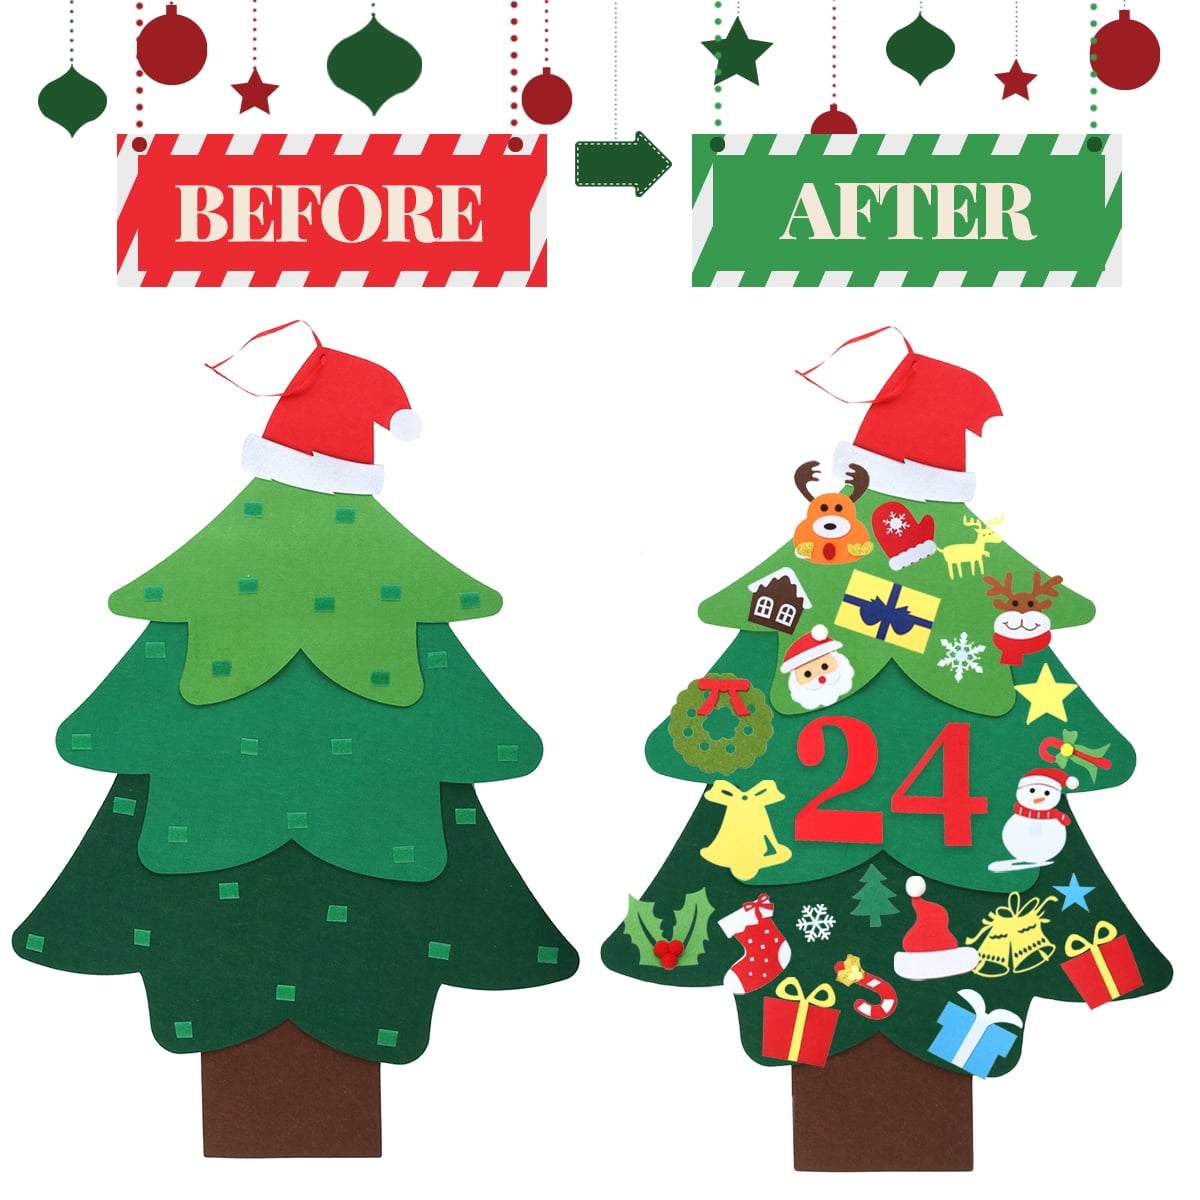 Christmas Countdown 15 : Christmas Tree #11 - Disposable